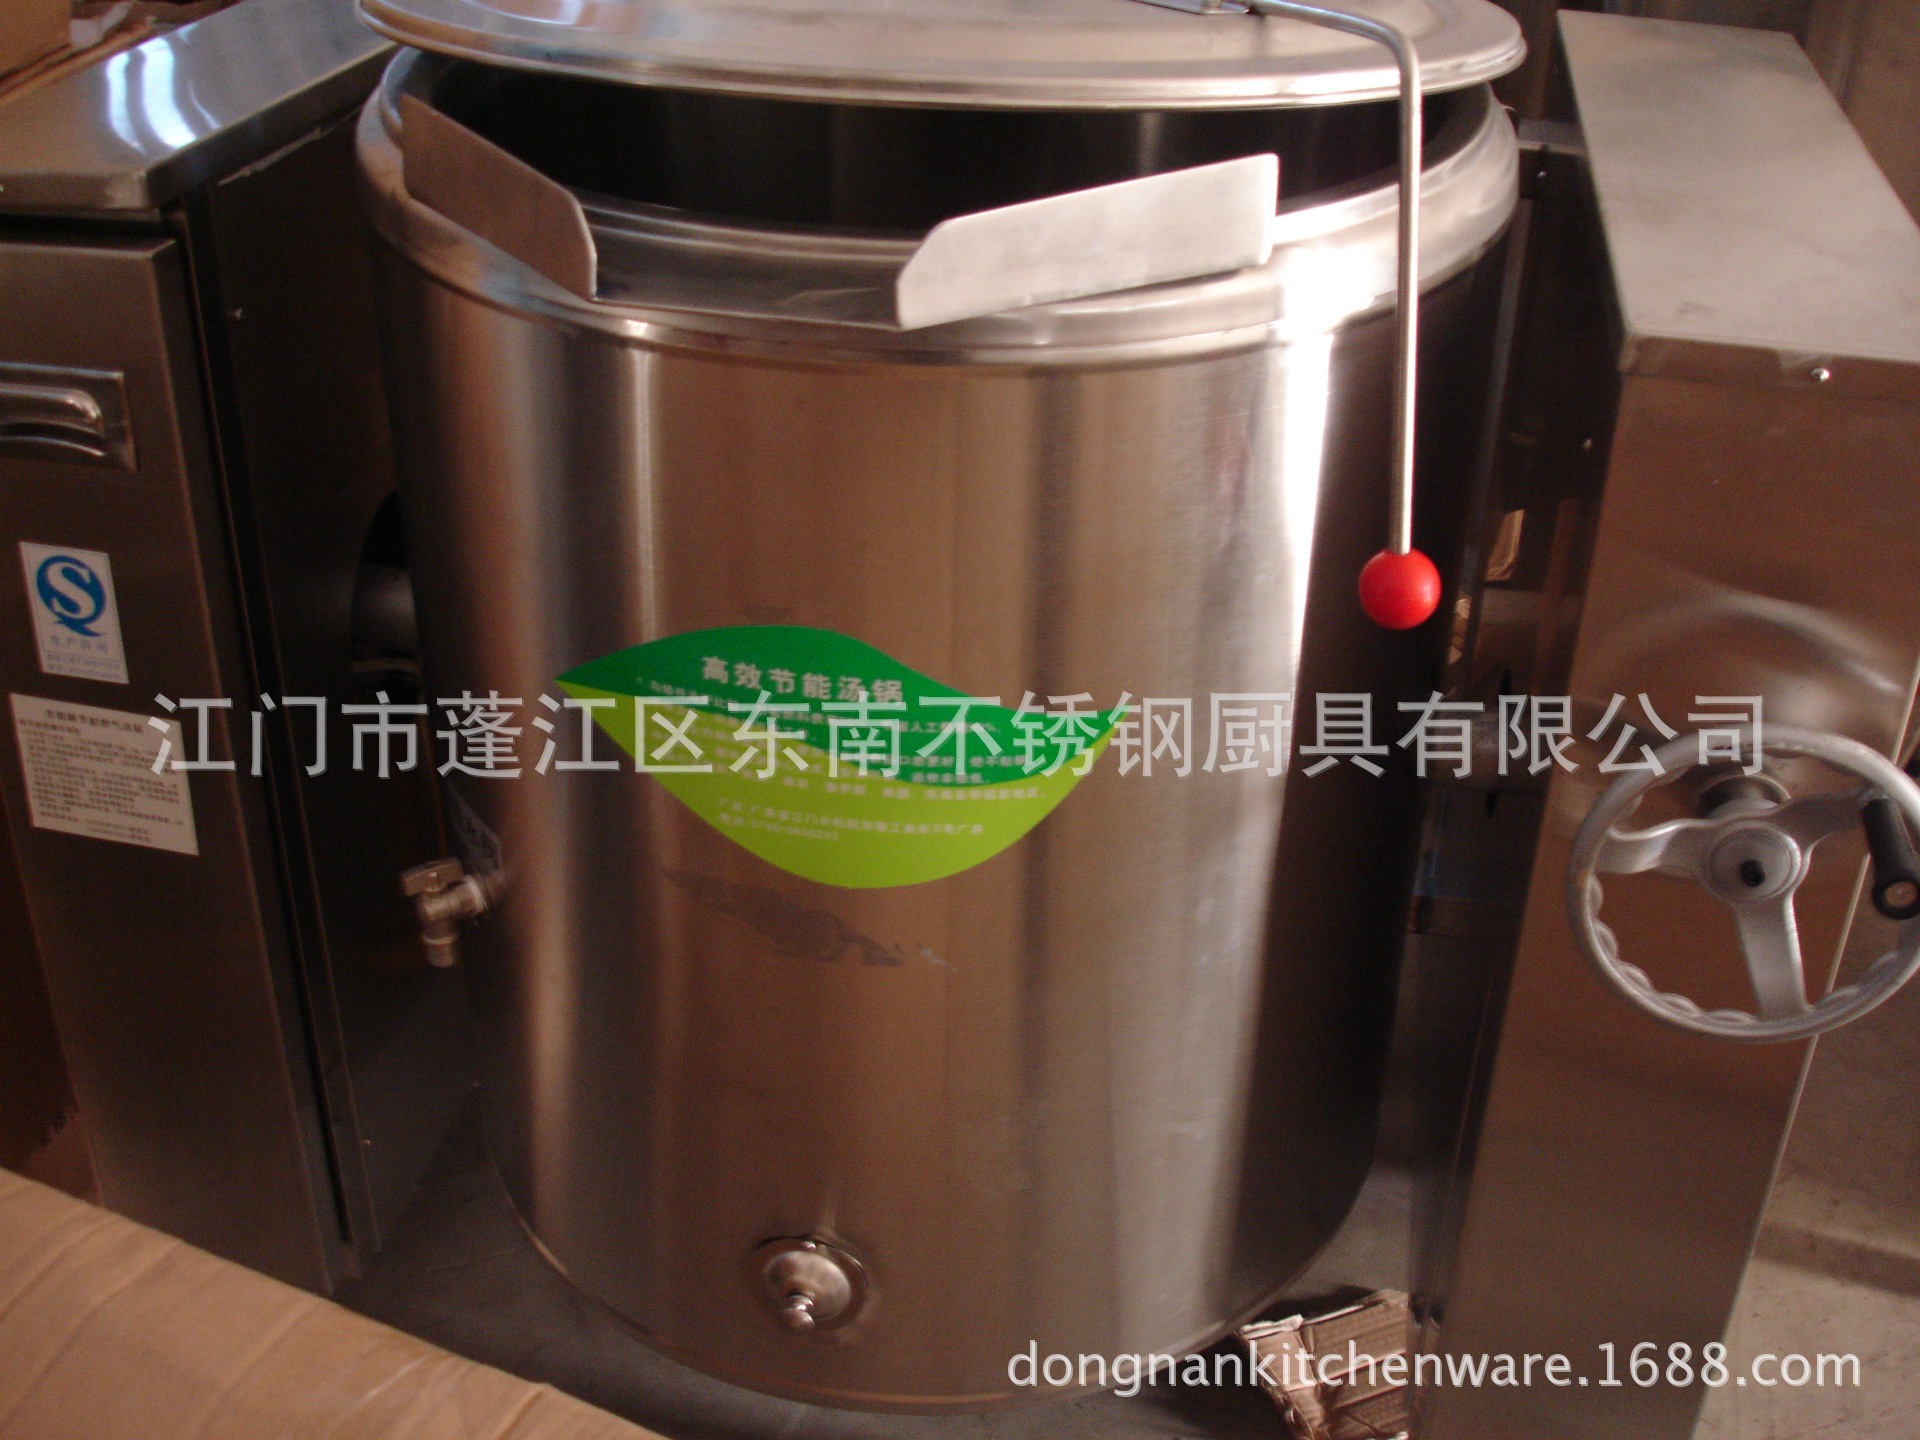 高效可倾式燃气汤粥锅 燃气式烹用设备 蒸汽夹层锅